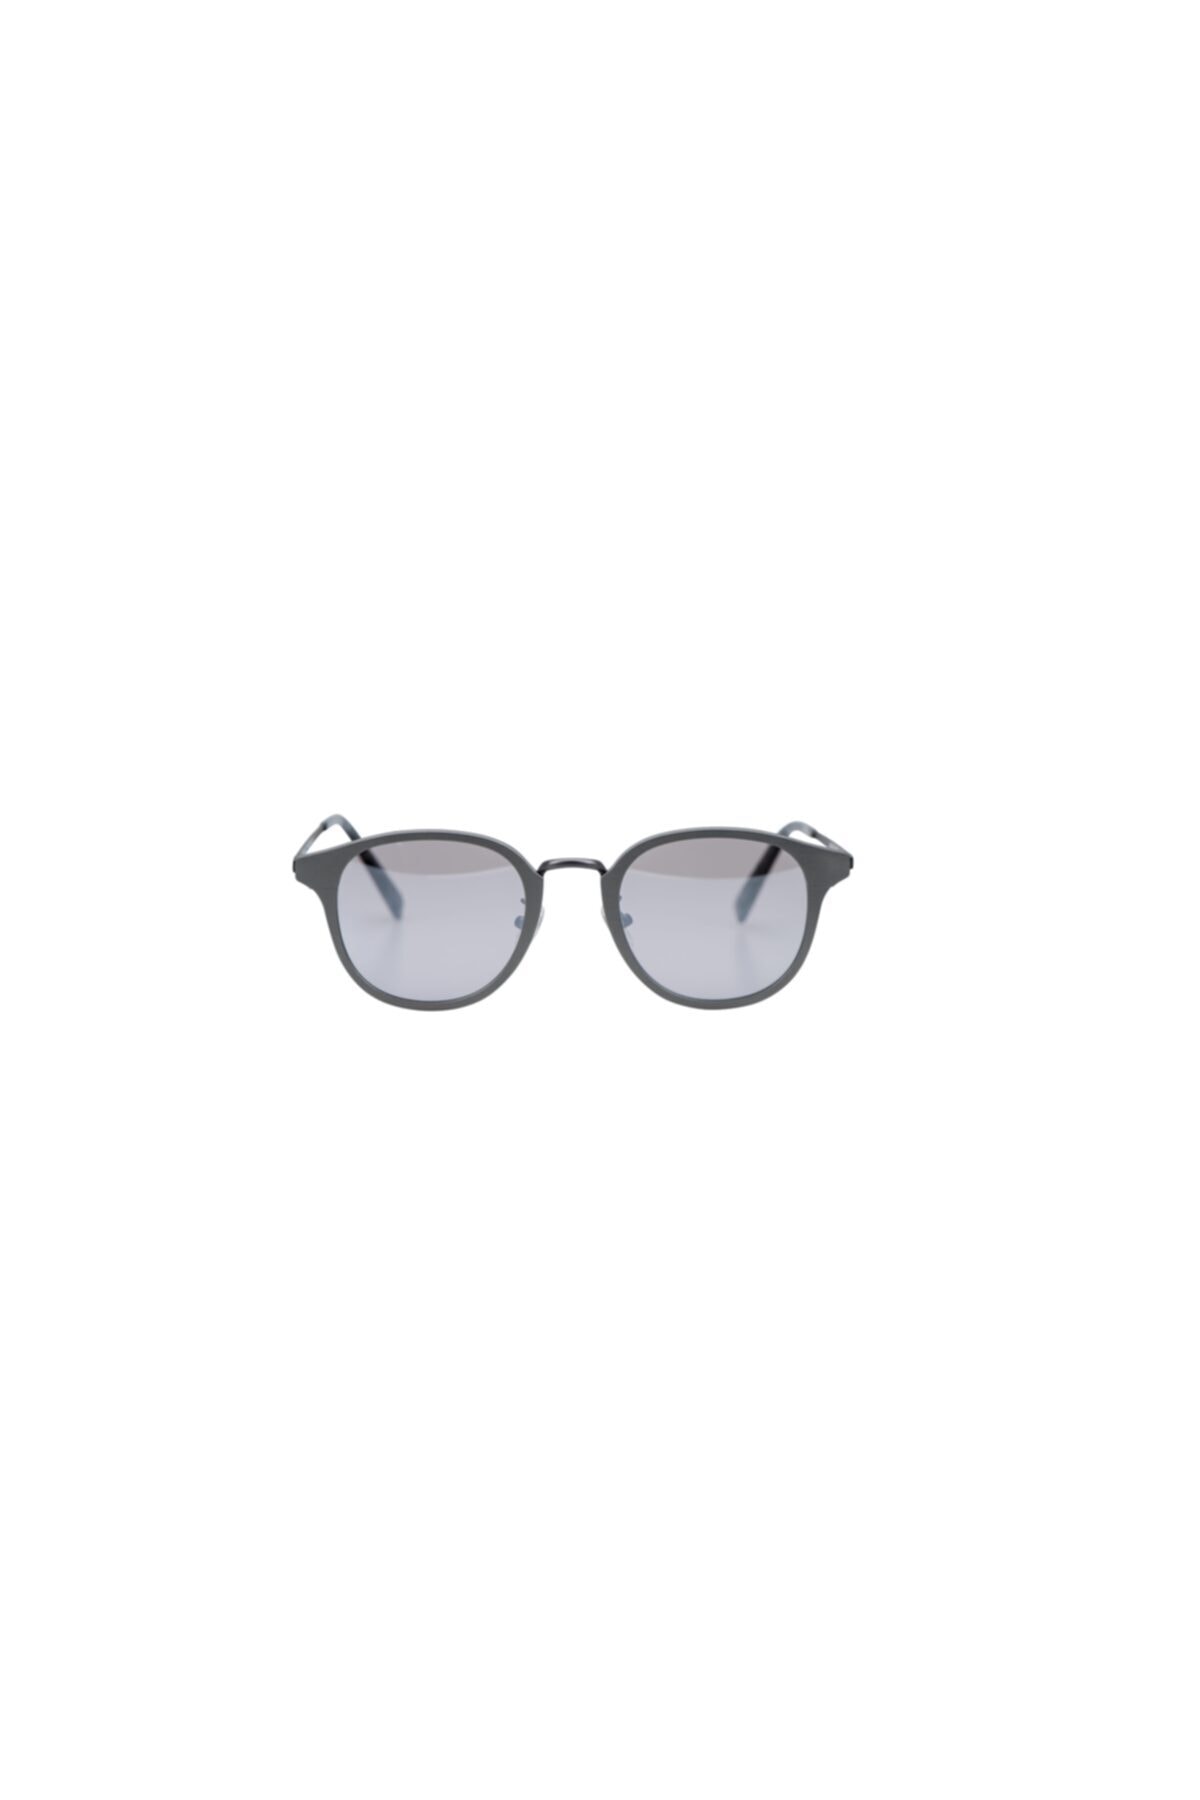 Sauren Leo Col 1 G Unısex Gözlük